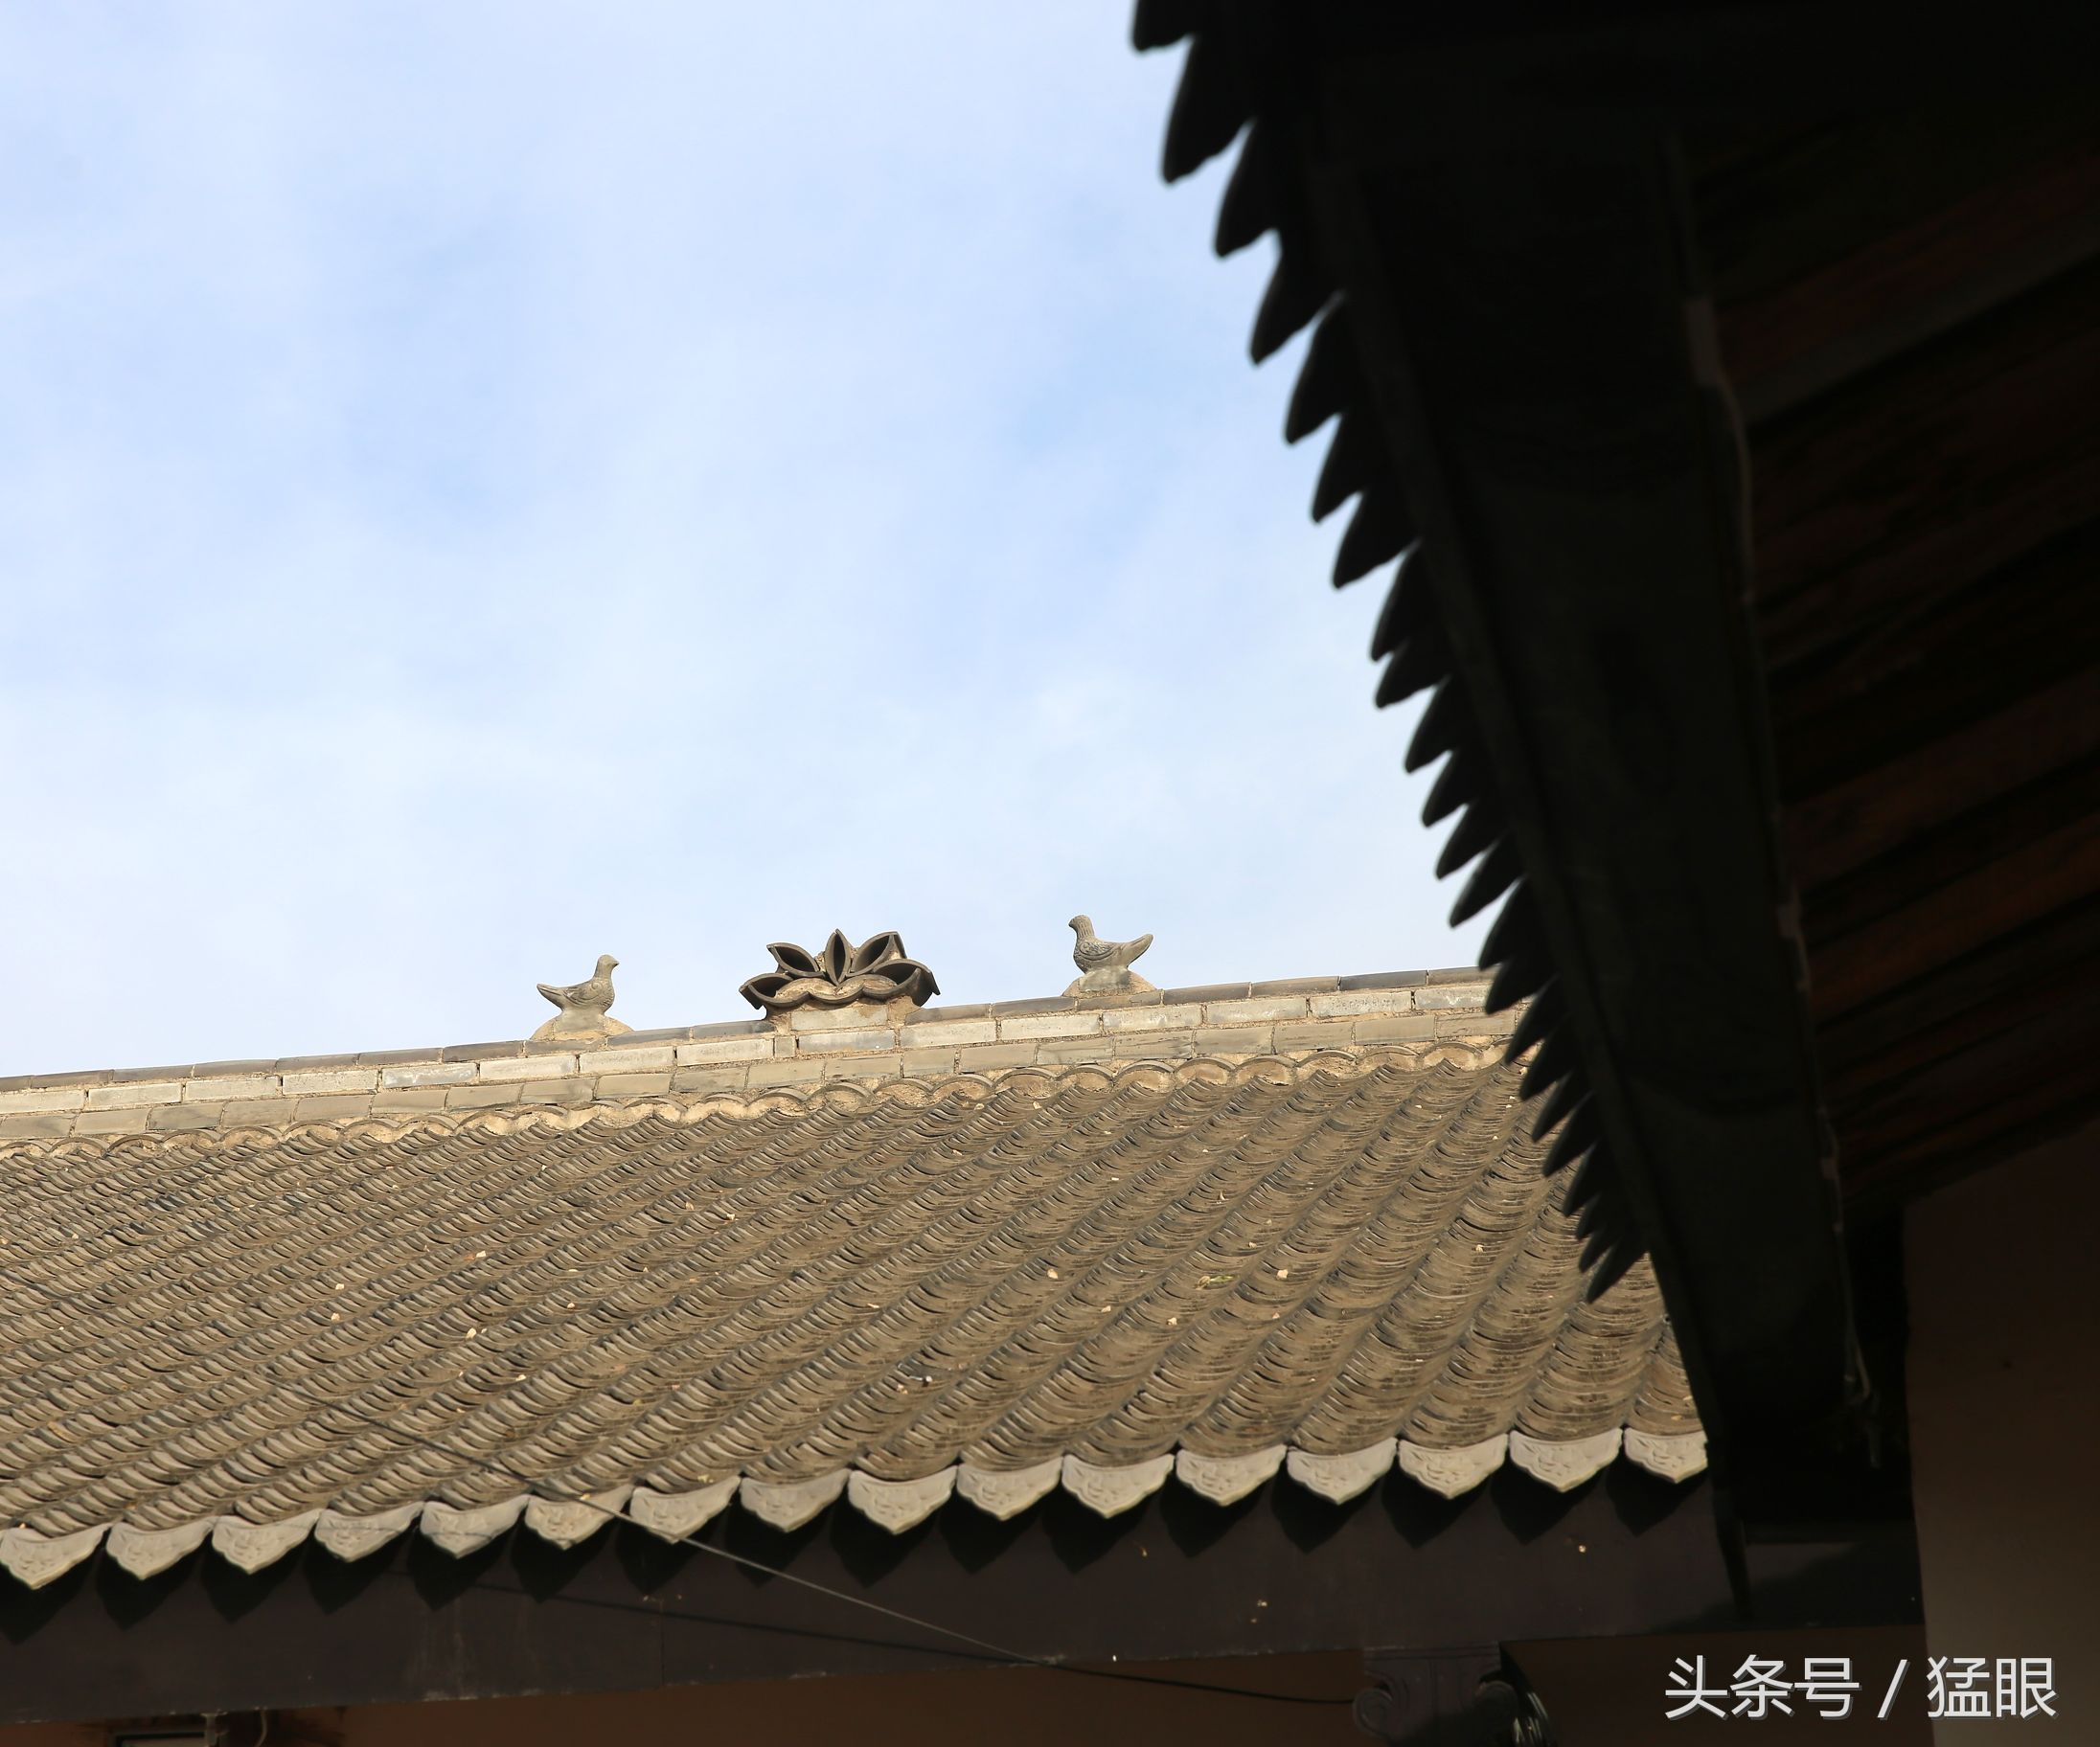 屋脊上,原来,这些鸽子全是雕刻而成,这小编记录一些农村老房子上的